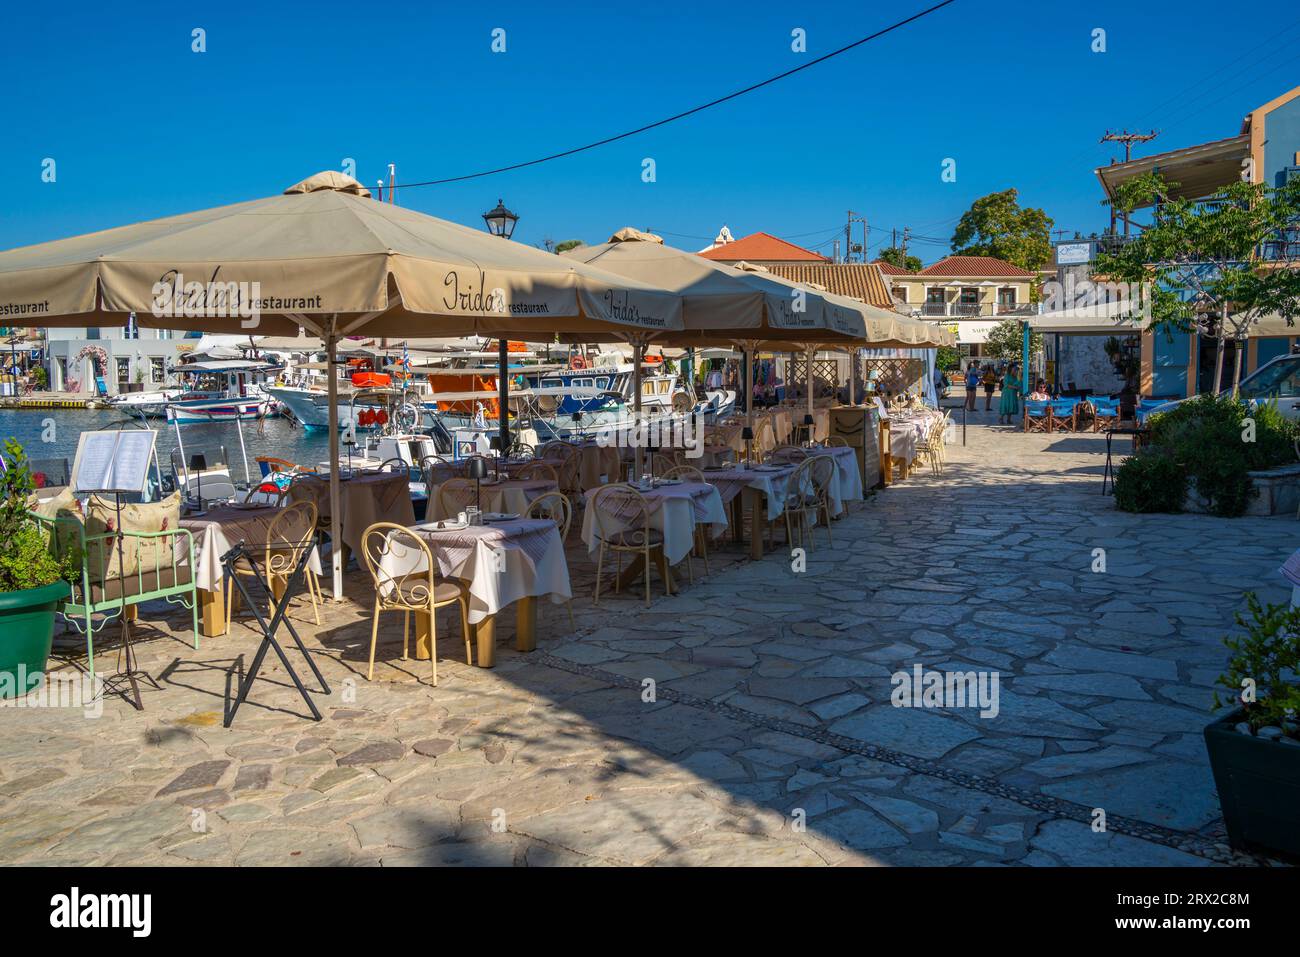 Vue des cafés et restaurants dans le port de Fiscardo, Fiscardo, Céphalonie, îles Ioniennes, îles grecques, Grèce, Europe Banque D'Images